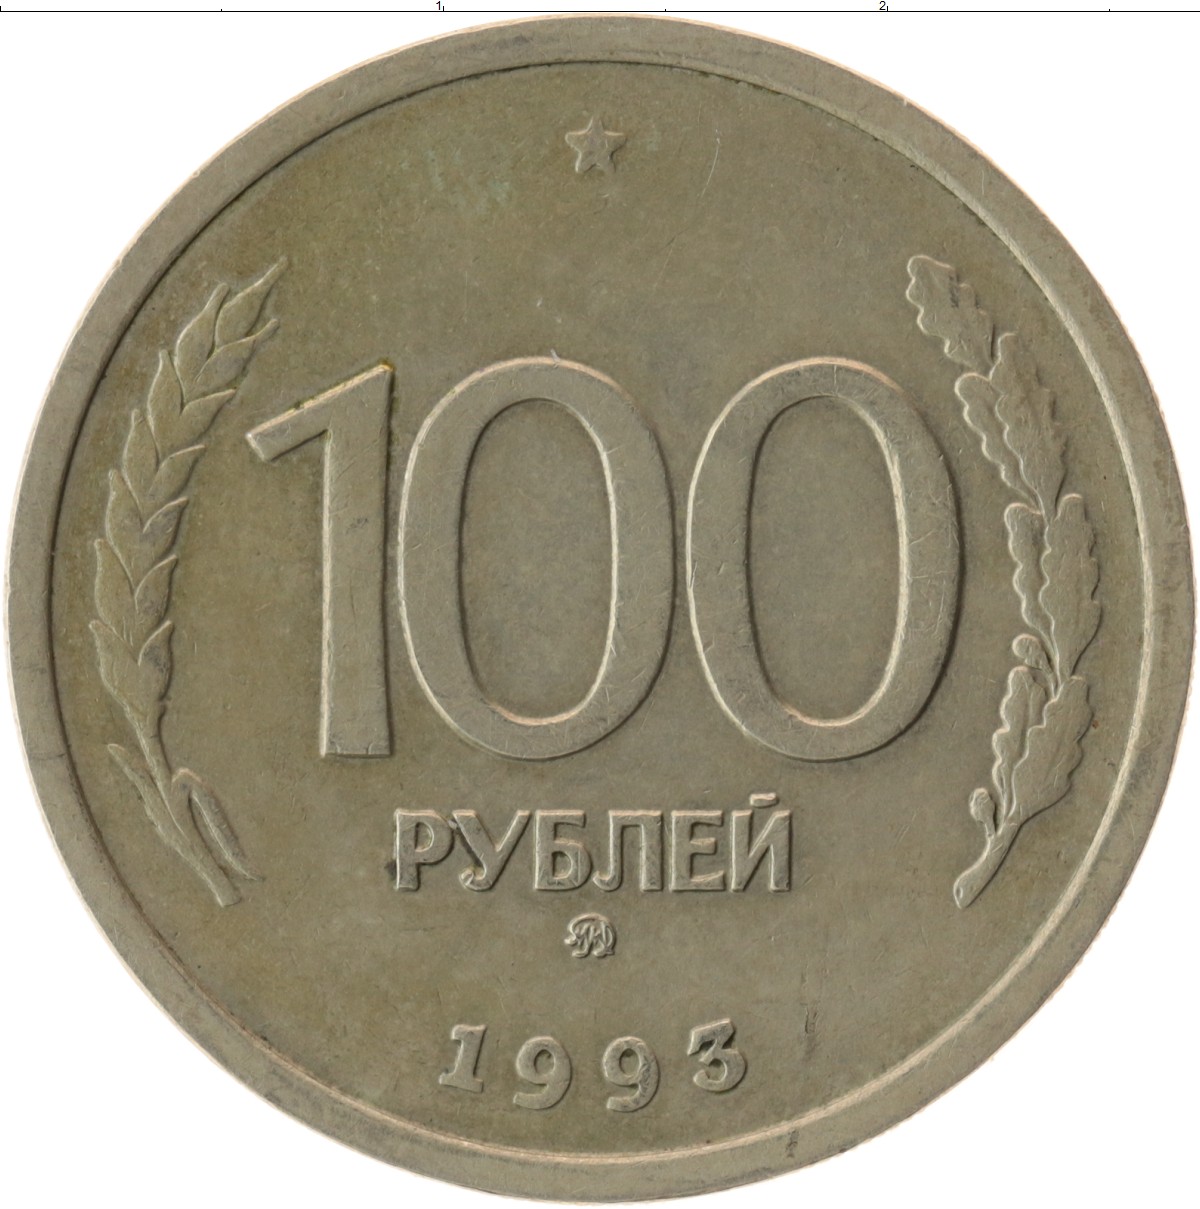 5 220 в рублях. 100 Рублей 1993 года. Монета 100 рублей 1993 ЛМД. 100 Рублей 1993 Аверс-Аверс. Монета номиналом 100 рублей 1993 года Московский монетный двор.